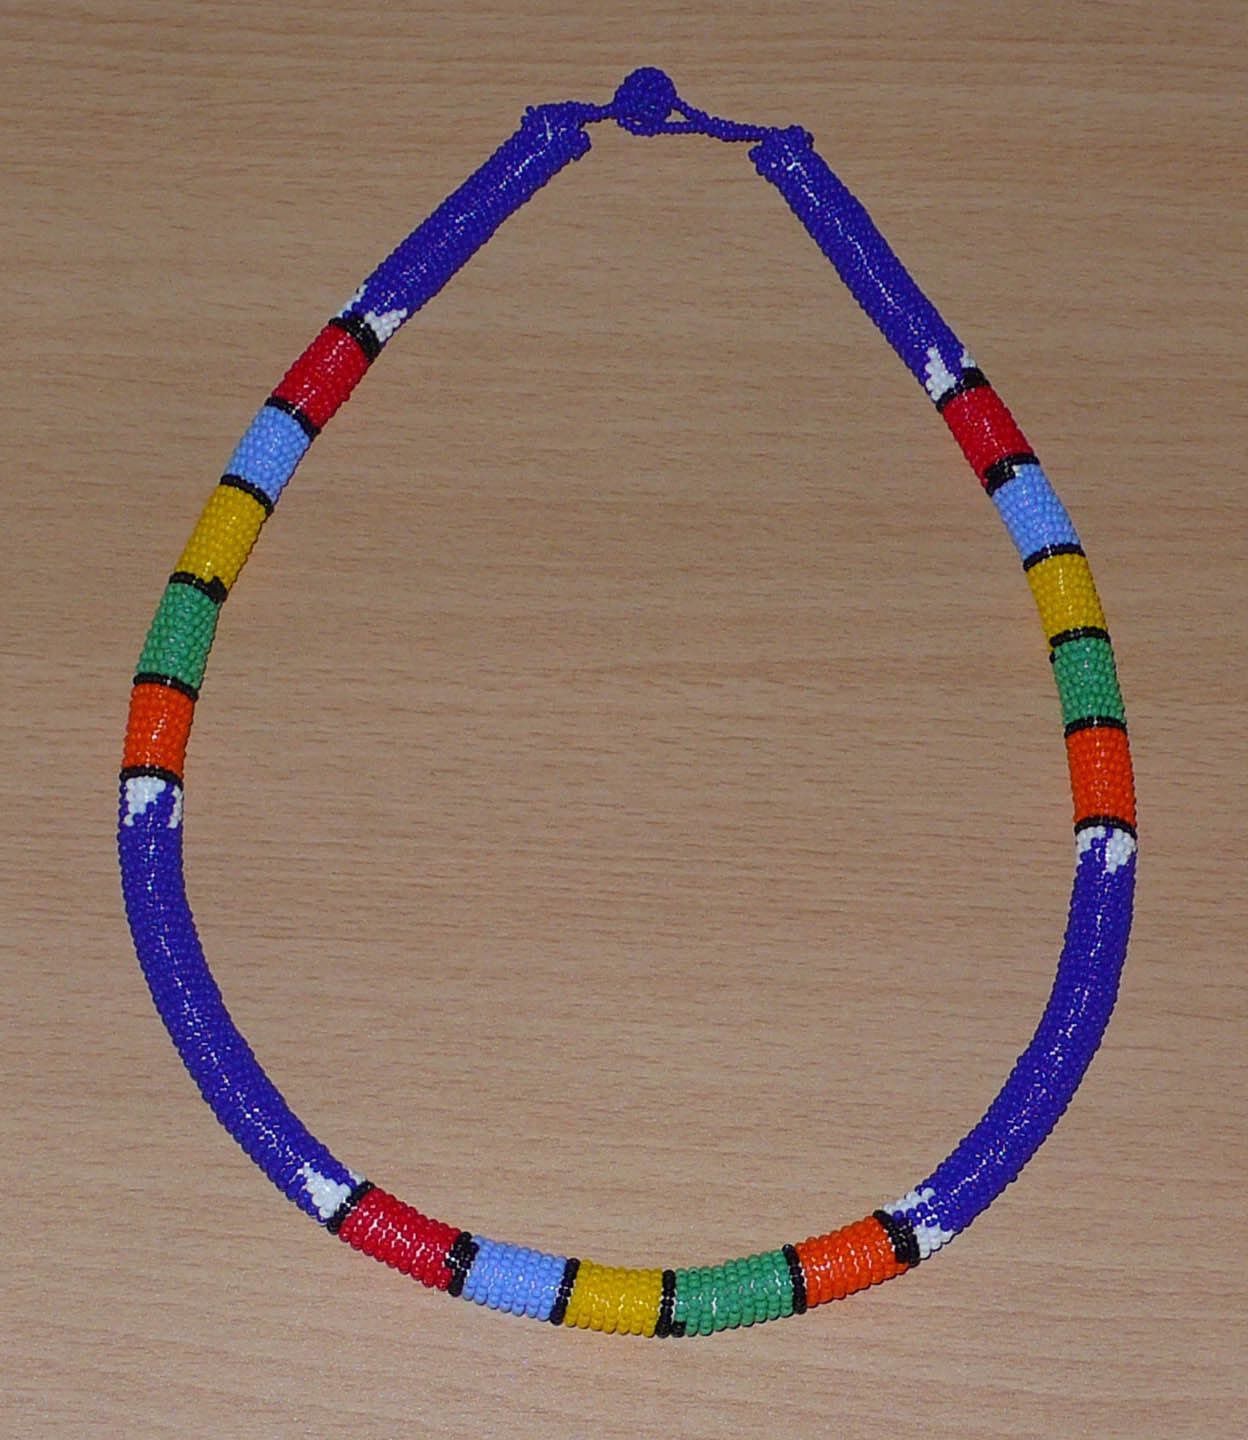 Bijou ethnique bleu. Collier sud-africain tubulaire bleu et multicolore. Il se compose d'un tube de plastique autour duquel sont enroulées des petites perles de rocaille bleues alternées avec des motifs ethniques traditionnels zoulous rouges, bleu ciel, jaunes, verts et orange. Le collier mesure 22 cm de long (de la nuque jusqu'à la base du collier), la longueur du tour de cou du collier est 56 cm, et son épaisseur est de 1 cm. Il s'attache avec un fermoir à boule. Timeless Fineries